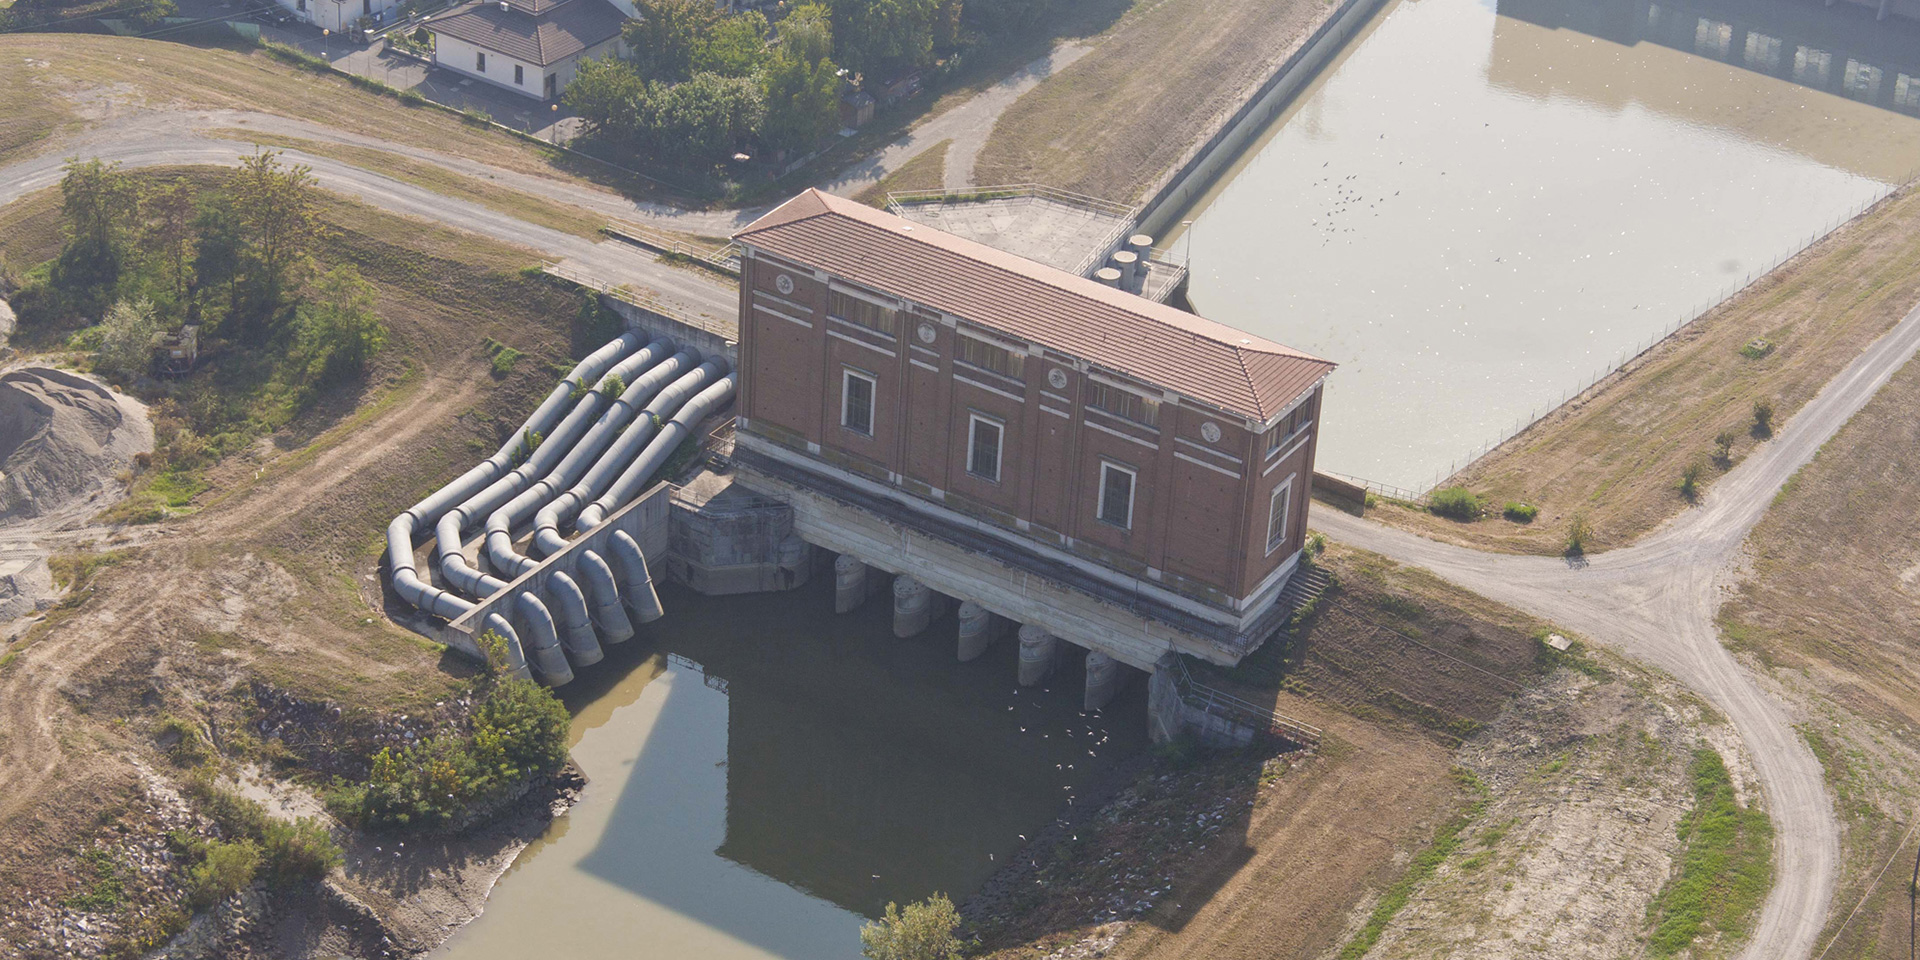 Impianto idrovoro sul Po a Boretto, Binini Partners, Società di architettura e ingegneria